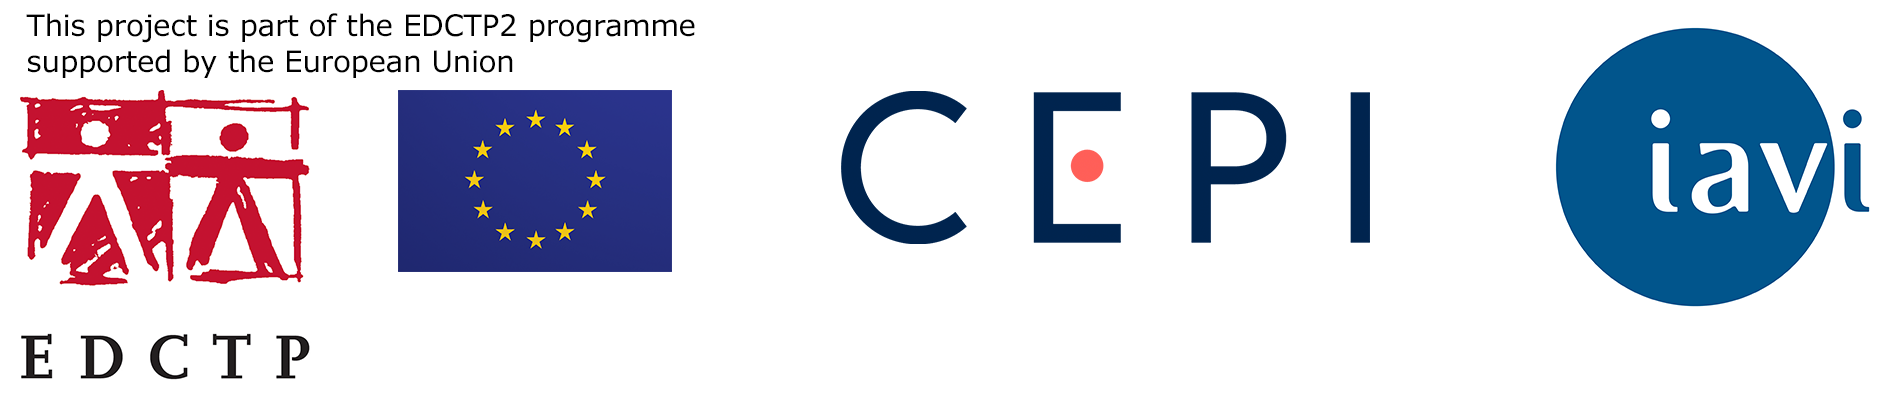 EDCTP CEPI IAVI logos